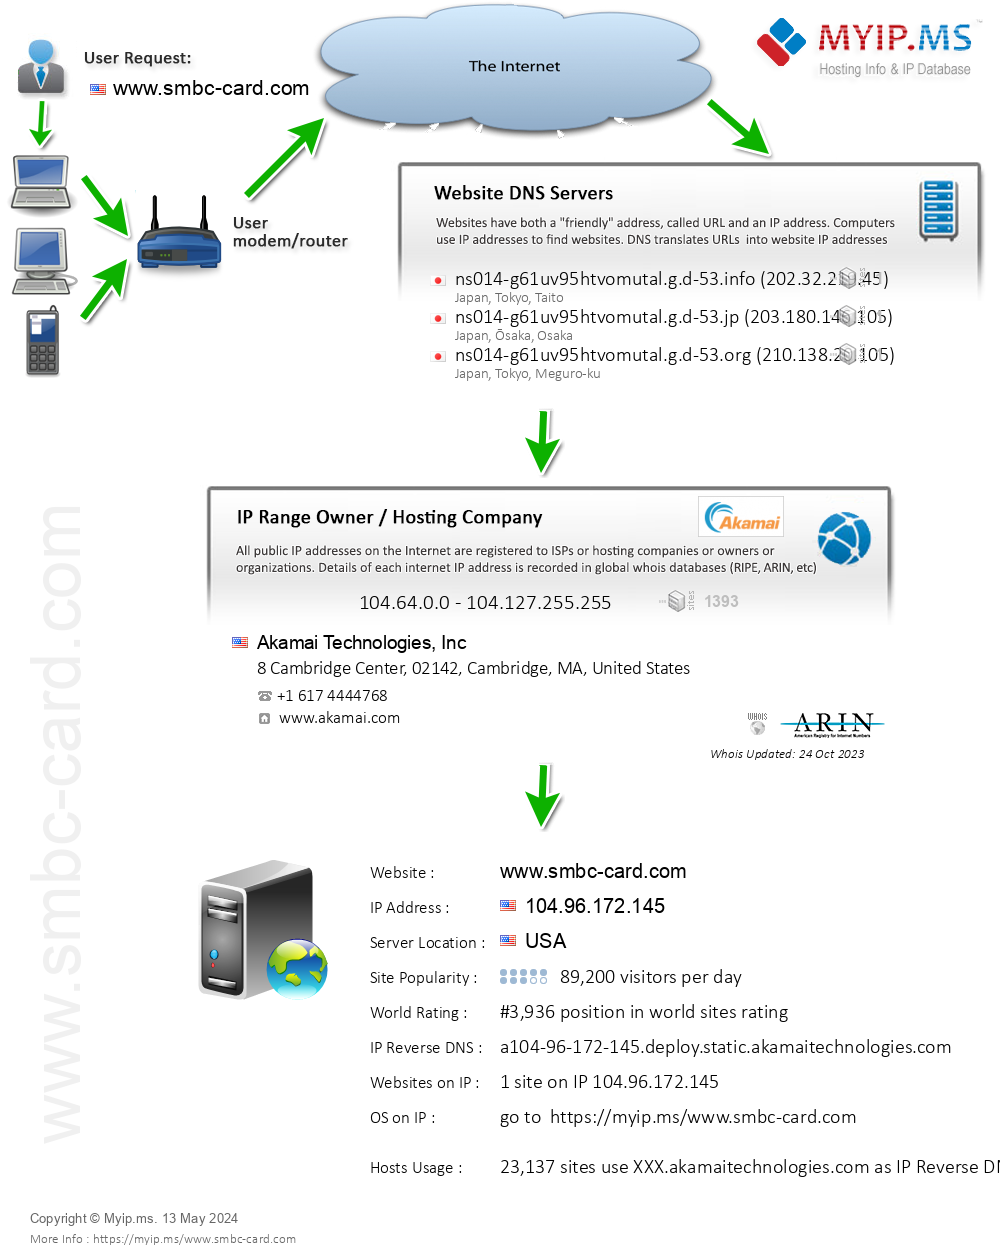 Smbc-card.com - Website Hosting Visual IP Diagram